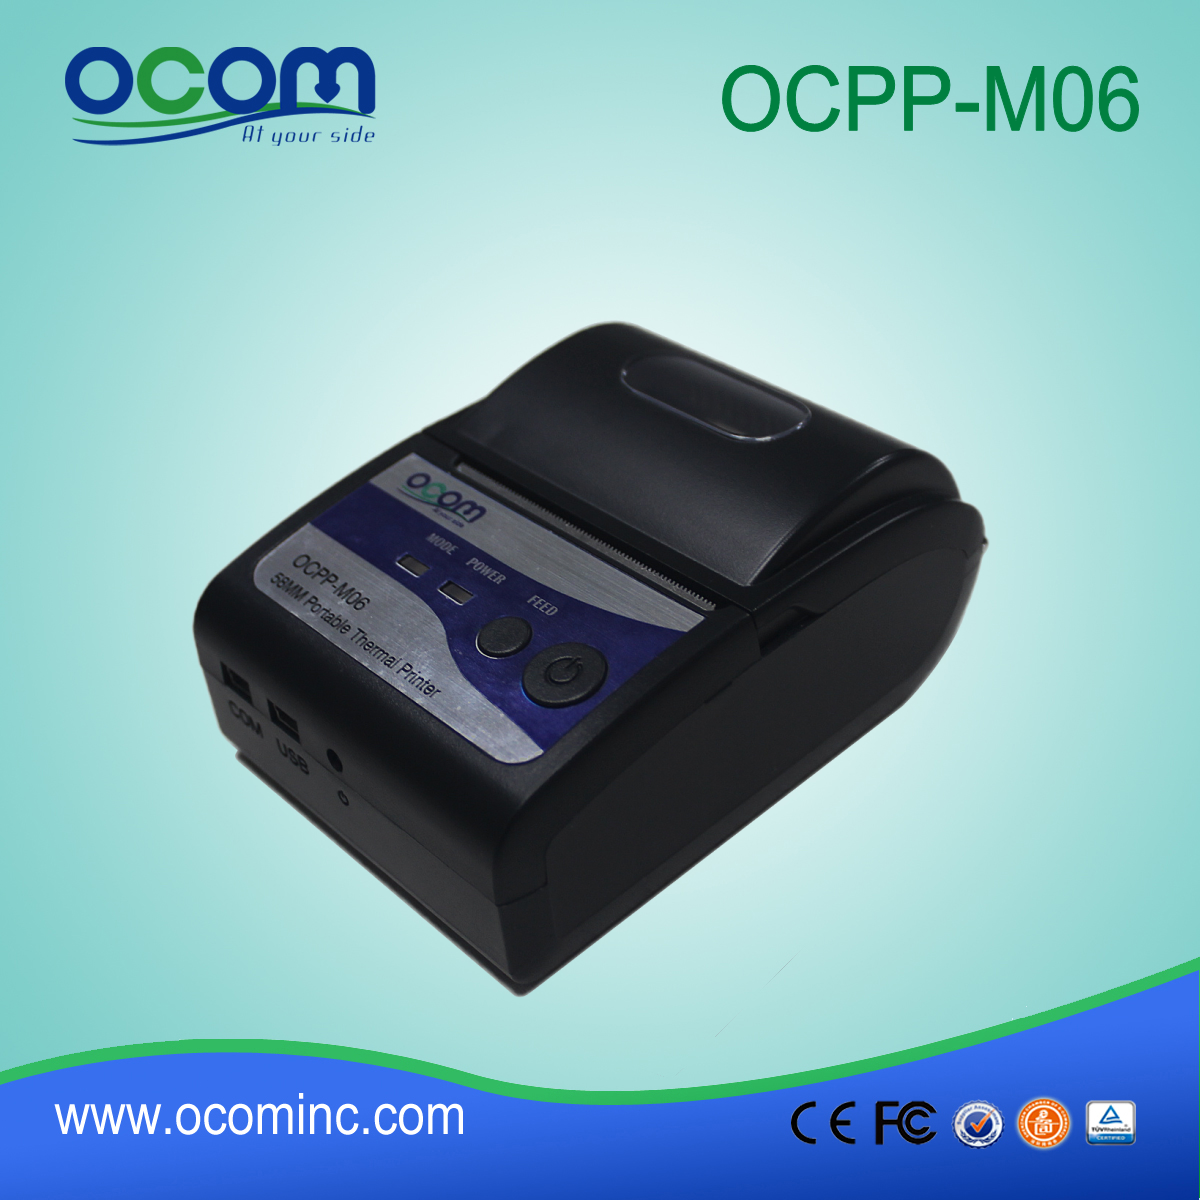 OCPP-M06: China fez boa qualidade OCOM 58 milímetros pos impressora impressora térmica